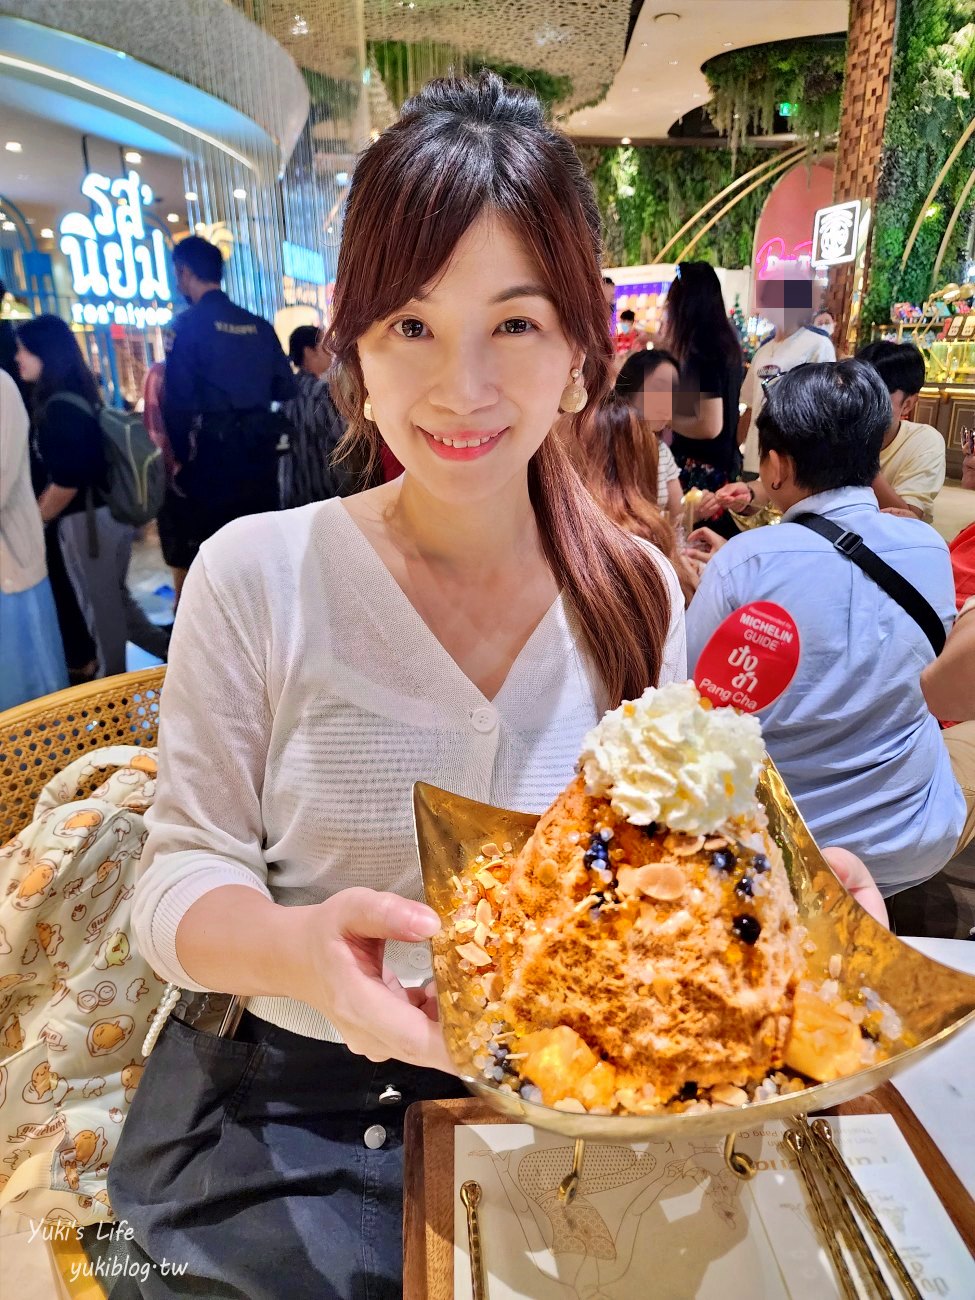 泰國曼谷美食》Pang Cha珍珠泰奶剉冰，巨型泰奶冰好浮誇，米其林推薦甜點～ - yukiblog.tw